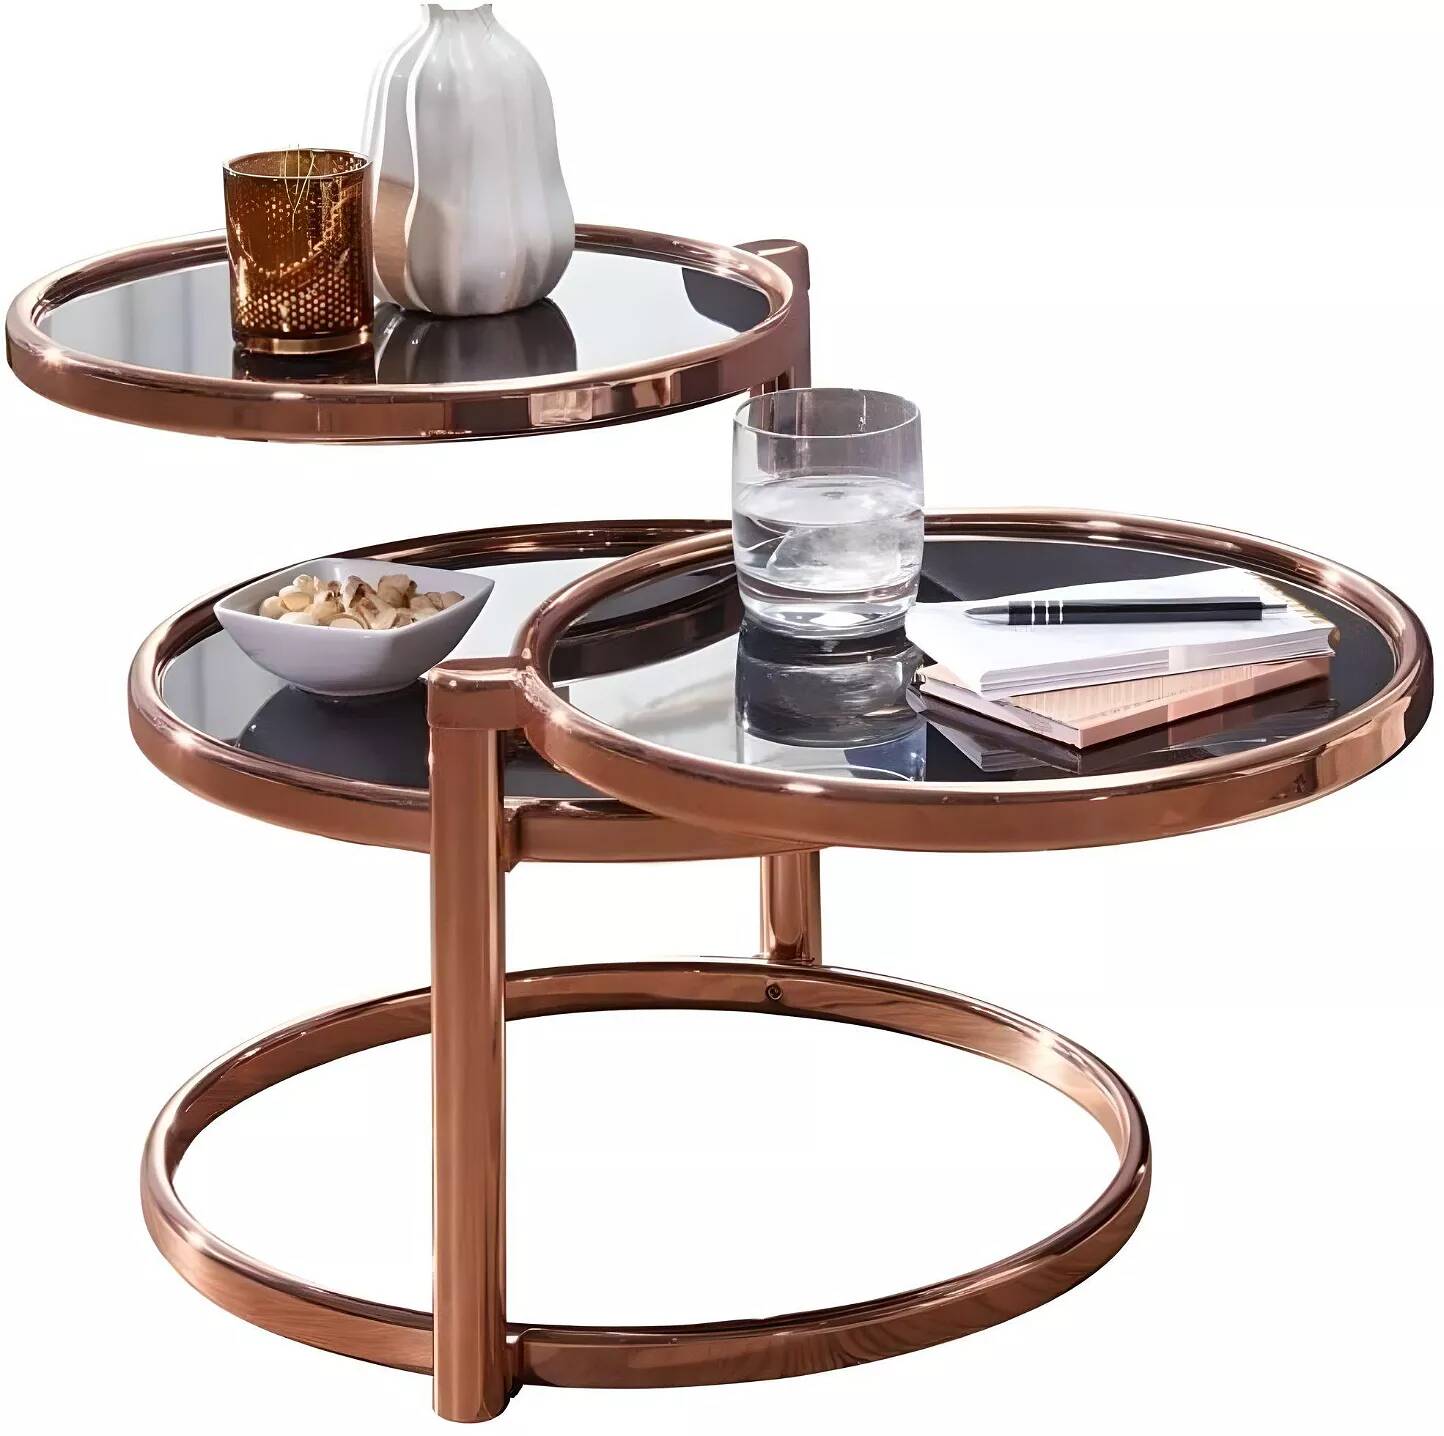 Table basse design 3 plateaux en verre trempé noir et acier cuivré